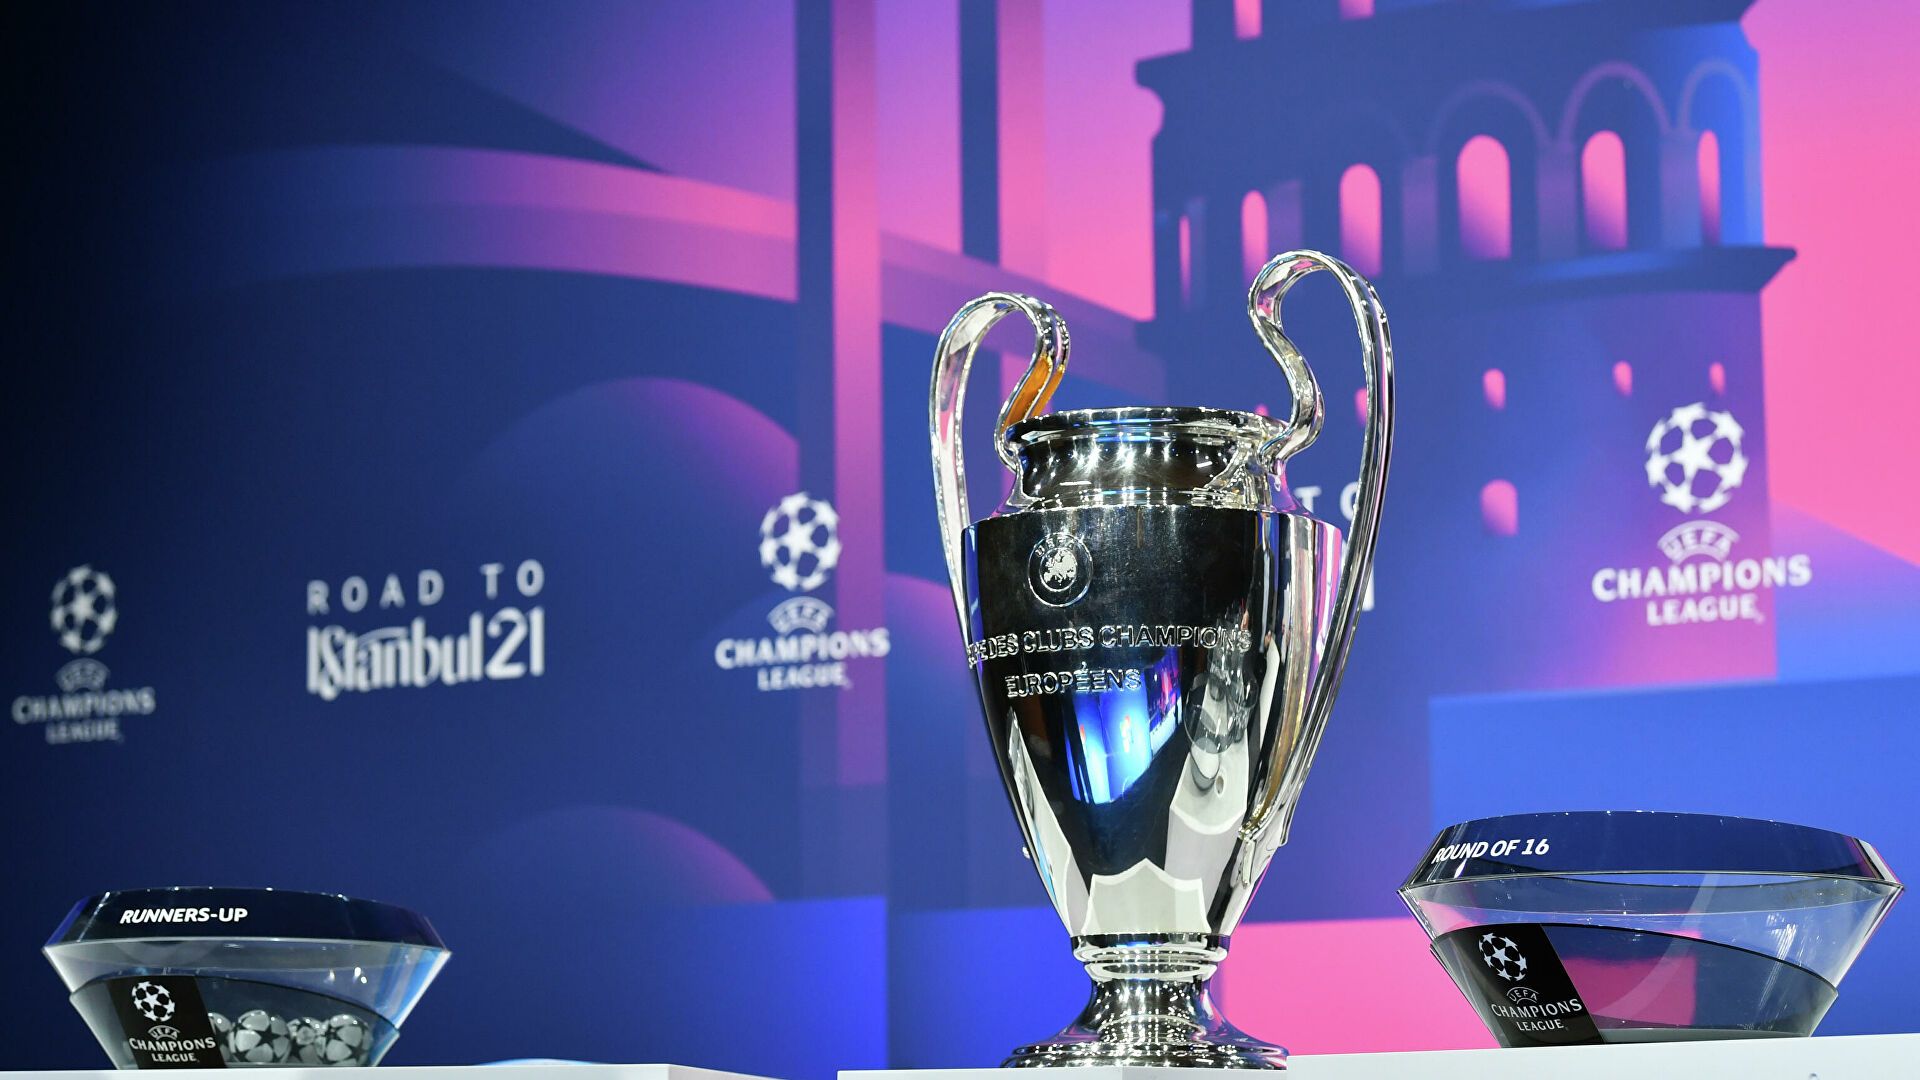 УЕФА обновит логотип Лиги чемпионов перед новым сезоном